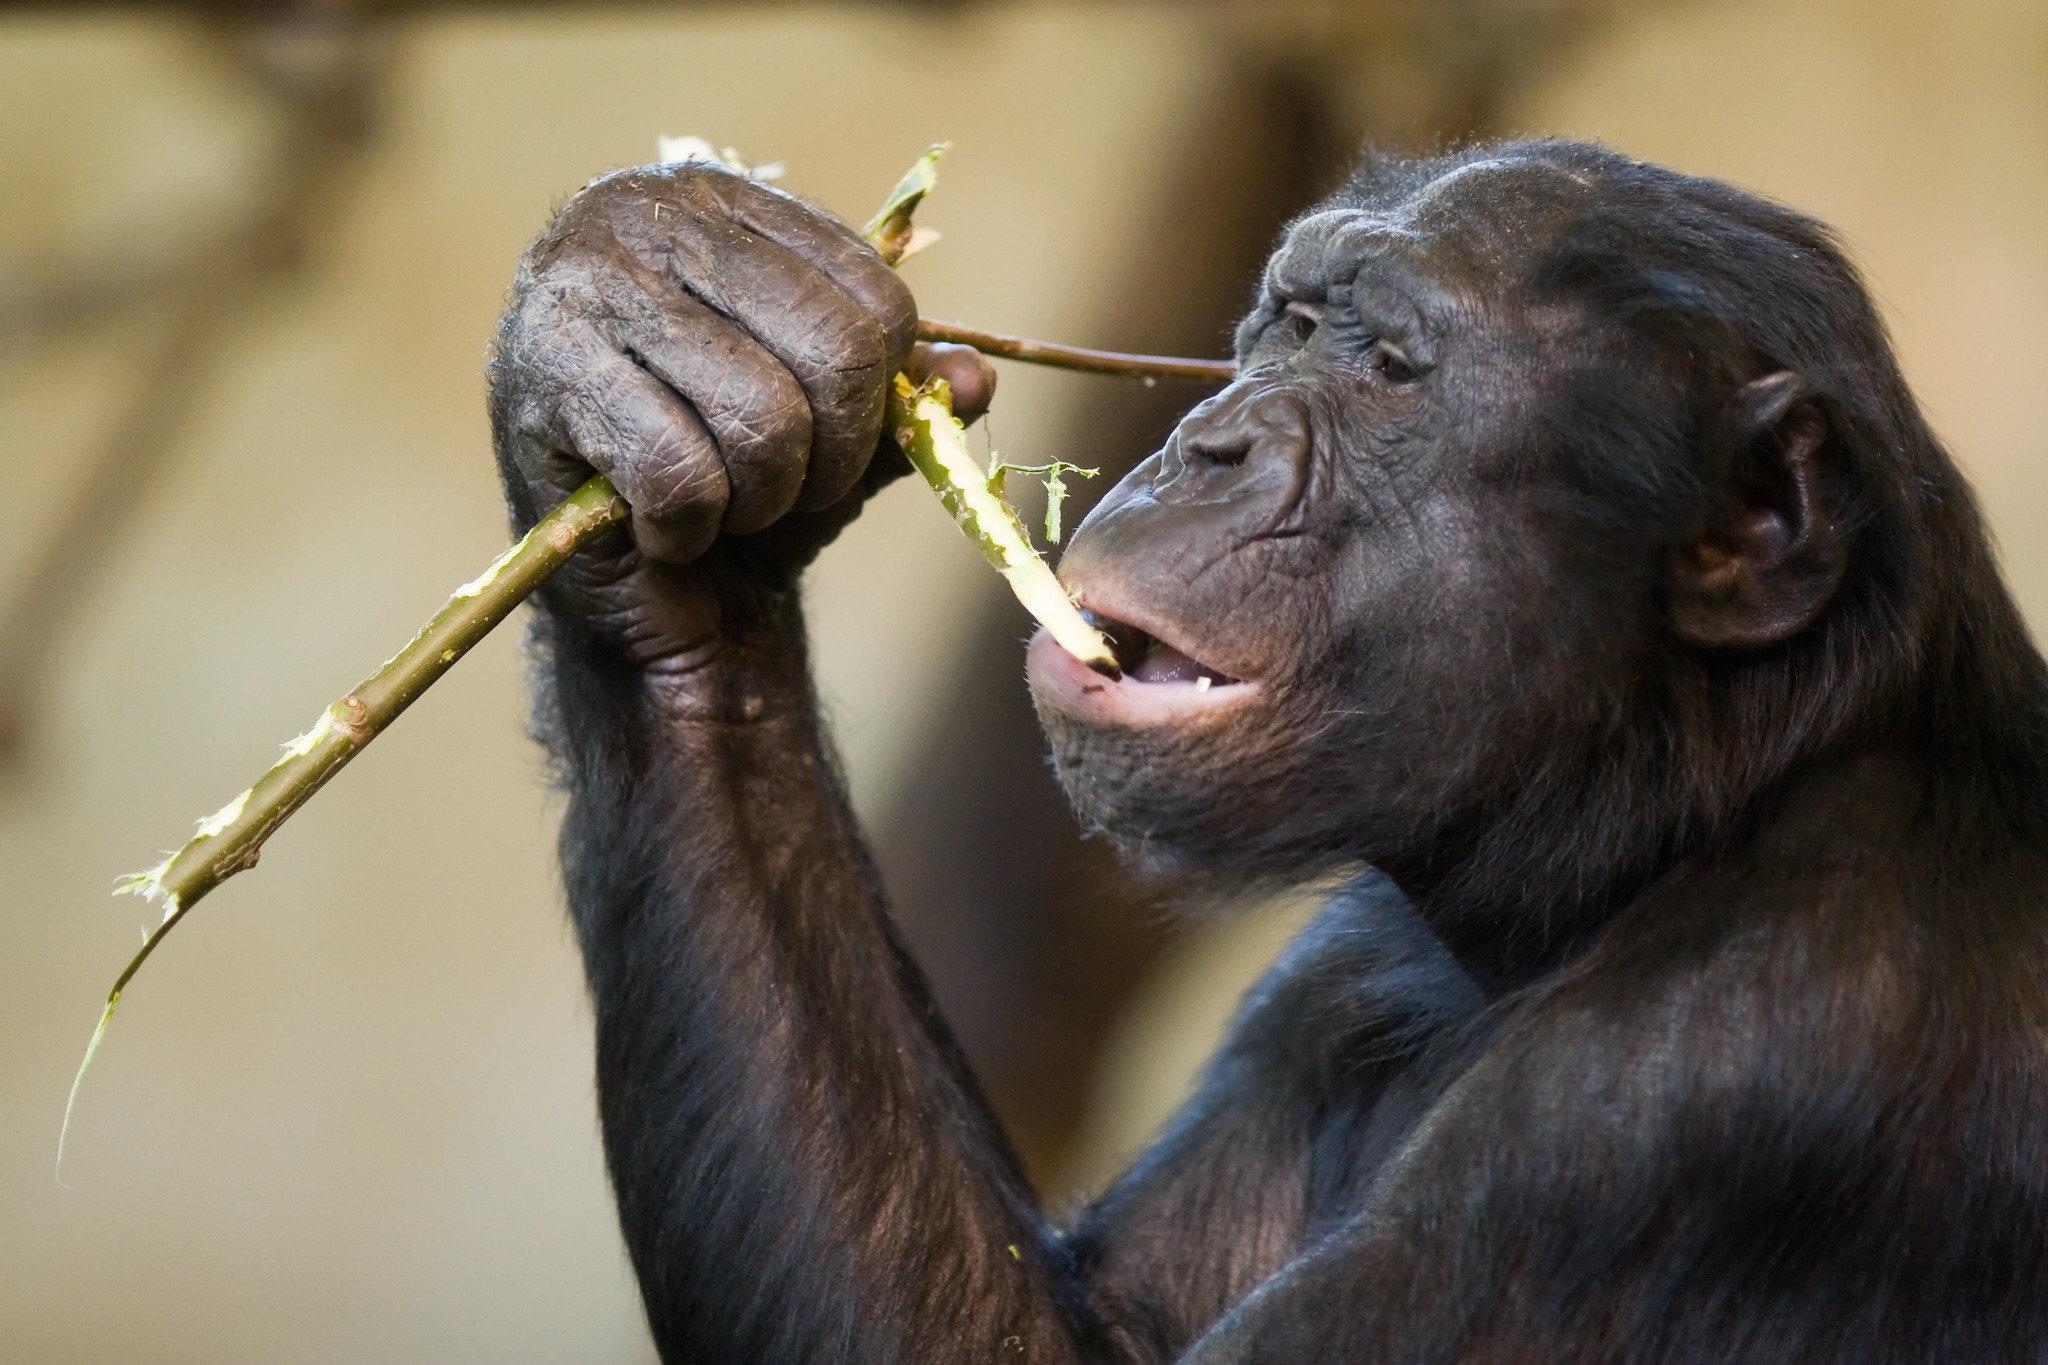 Bonobové nejsou zas tak mírumilovní, jak jsme si mysleli